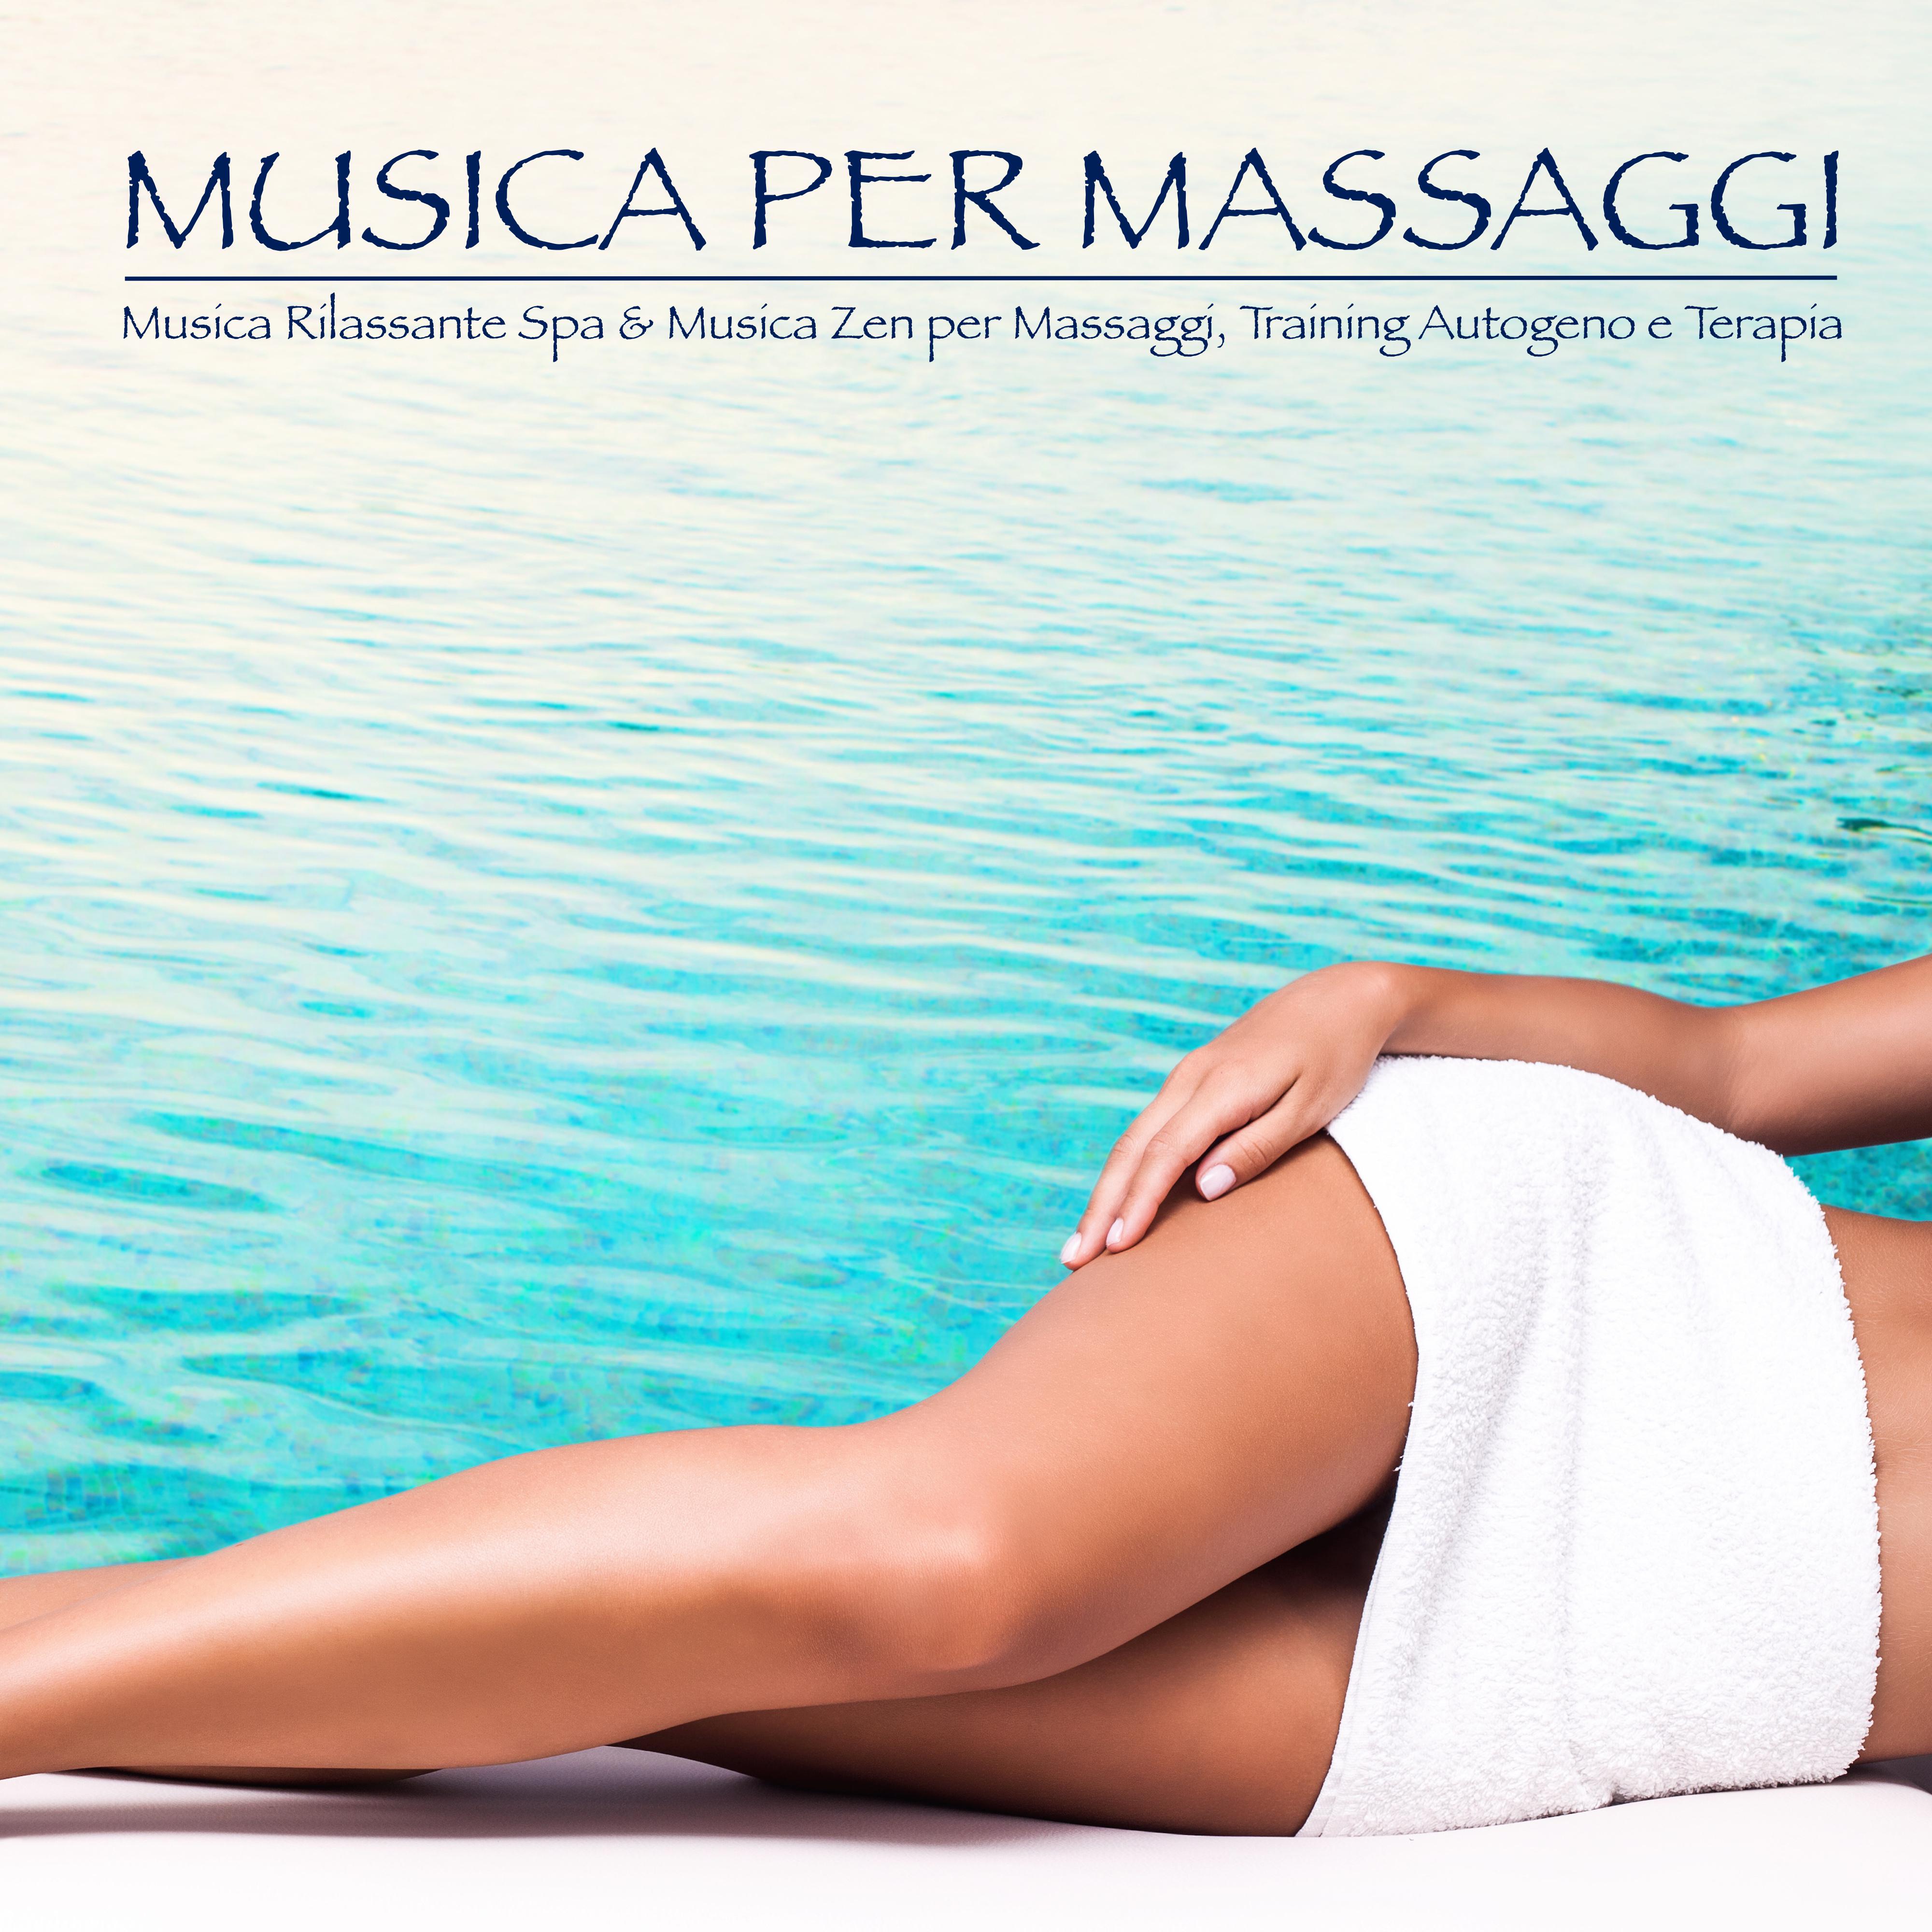 Musica per Massaggi - Musica Rilassante Spa & Musica Zen per Massaggi, Training Autogeno e Terapia